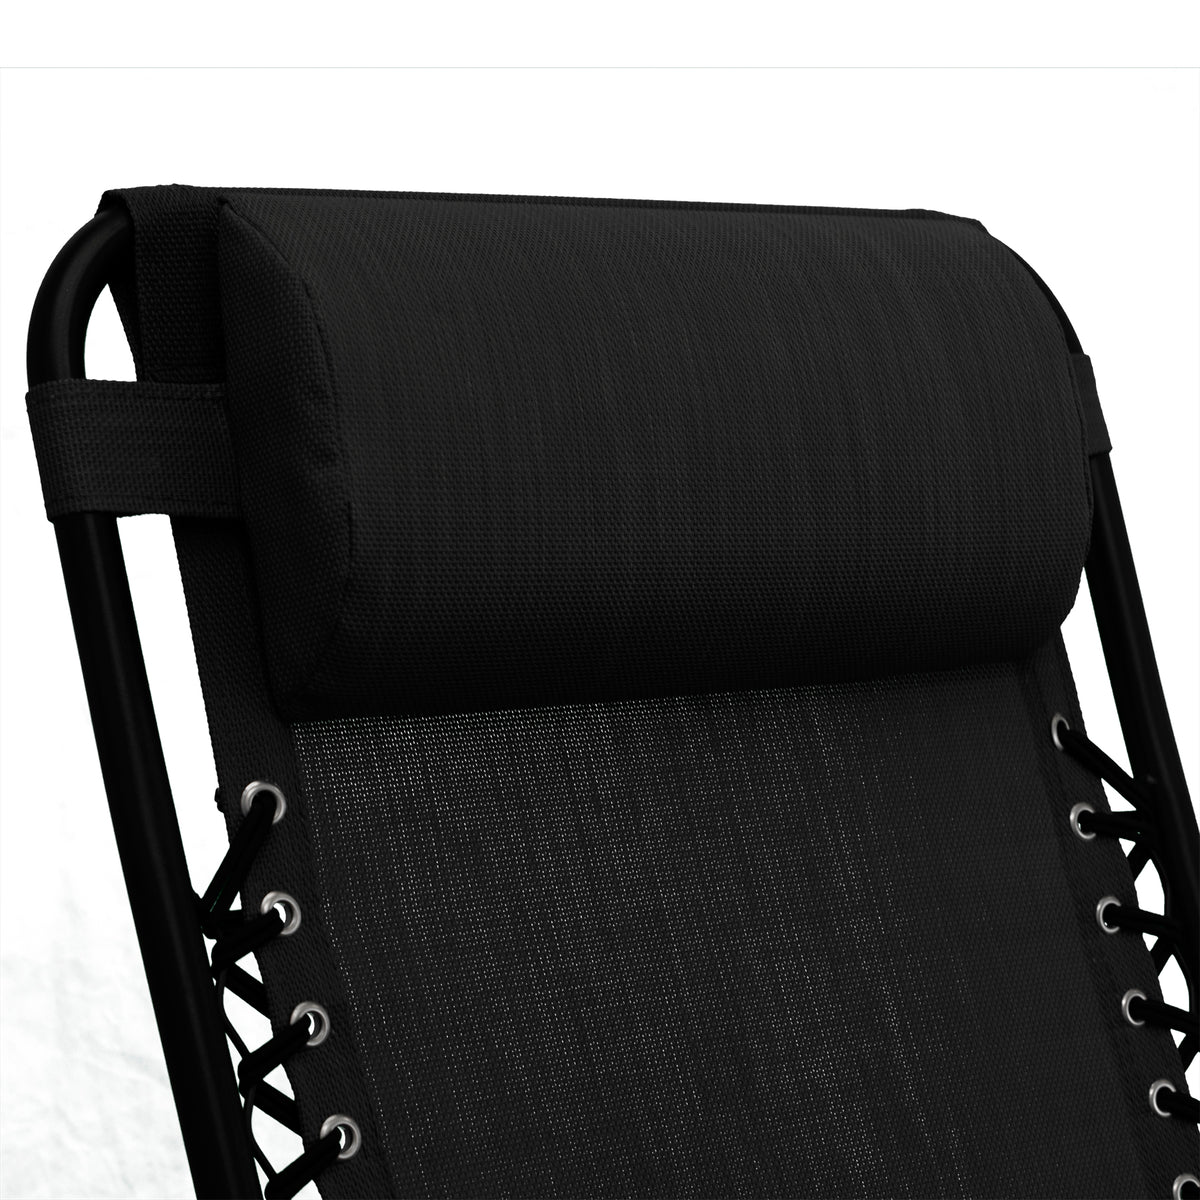 Bracken Outdoors Pair of Anti-Gravity Capri Relaxer Chairs - Black